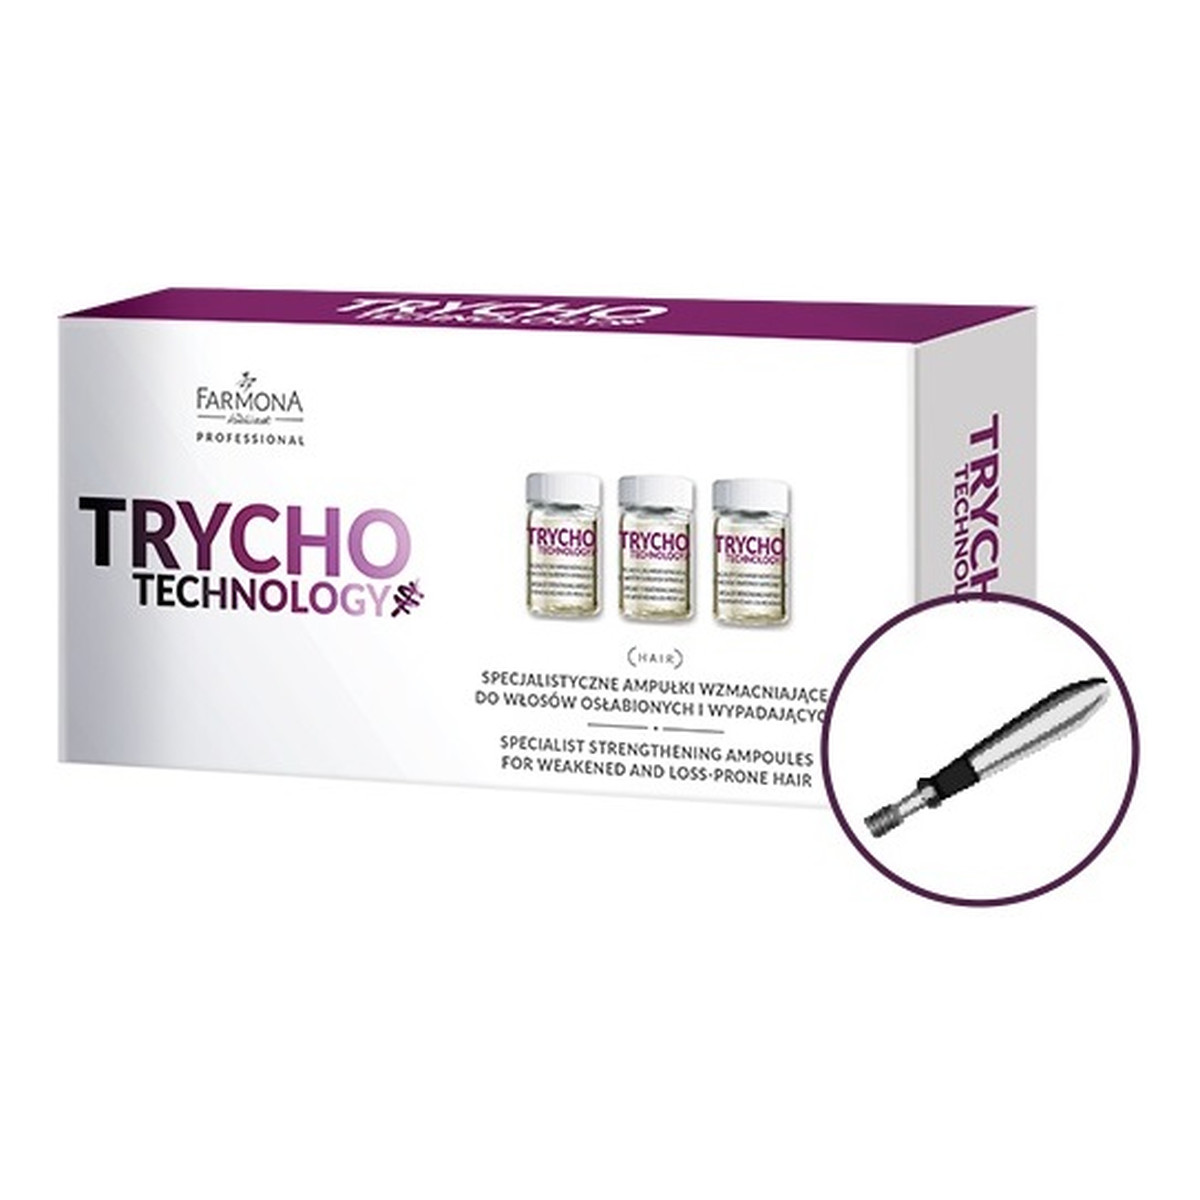 Farmona Professional Trycho technology specjalistyczne ampułki wzmacniające do włosów osłabionych i wypadających 10× 5ml